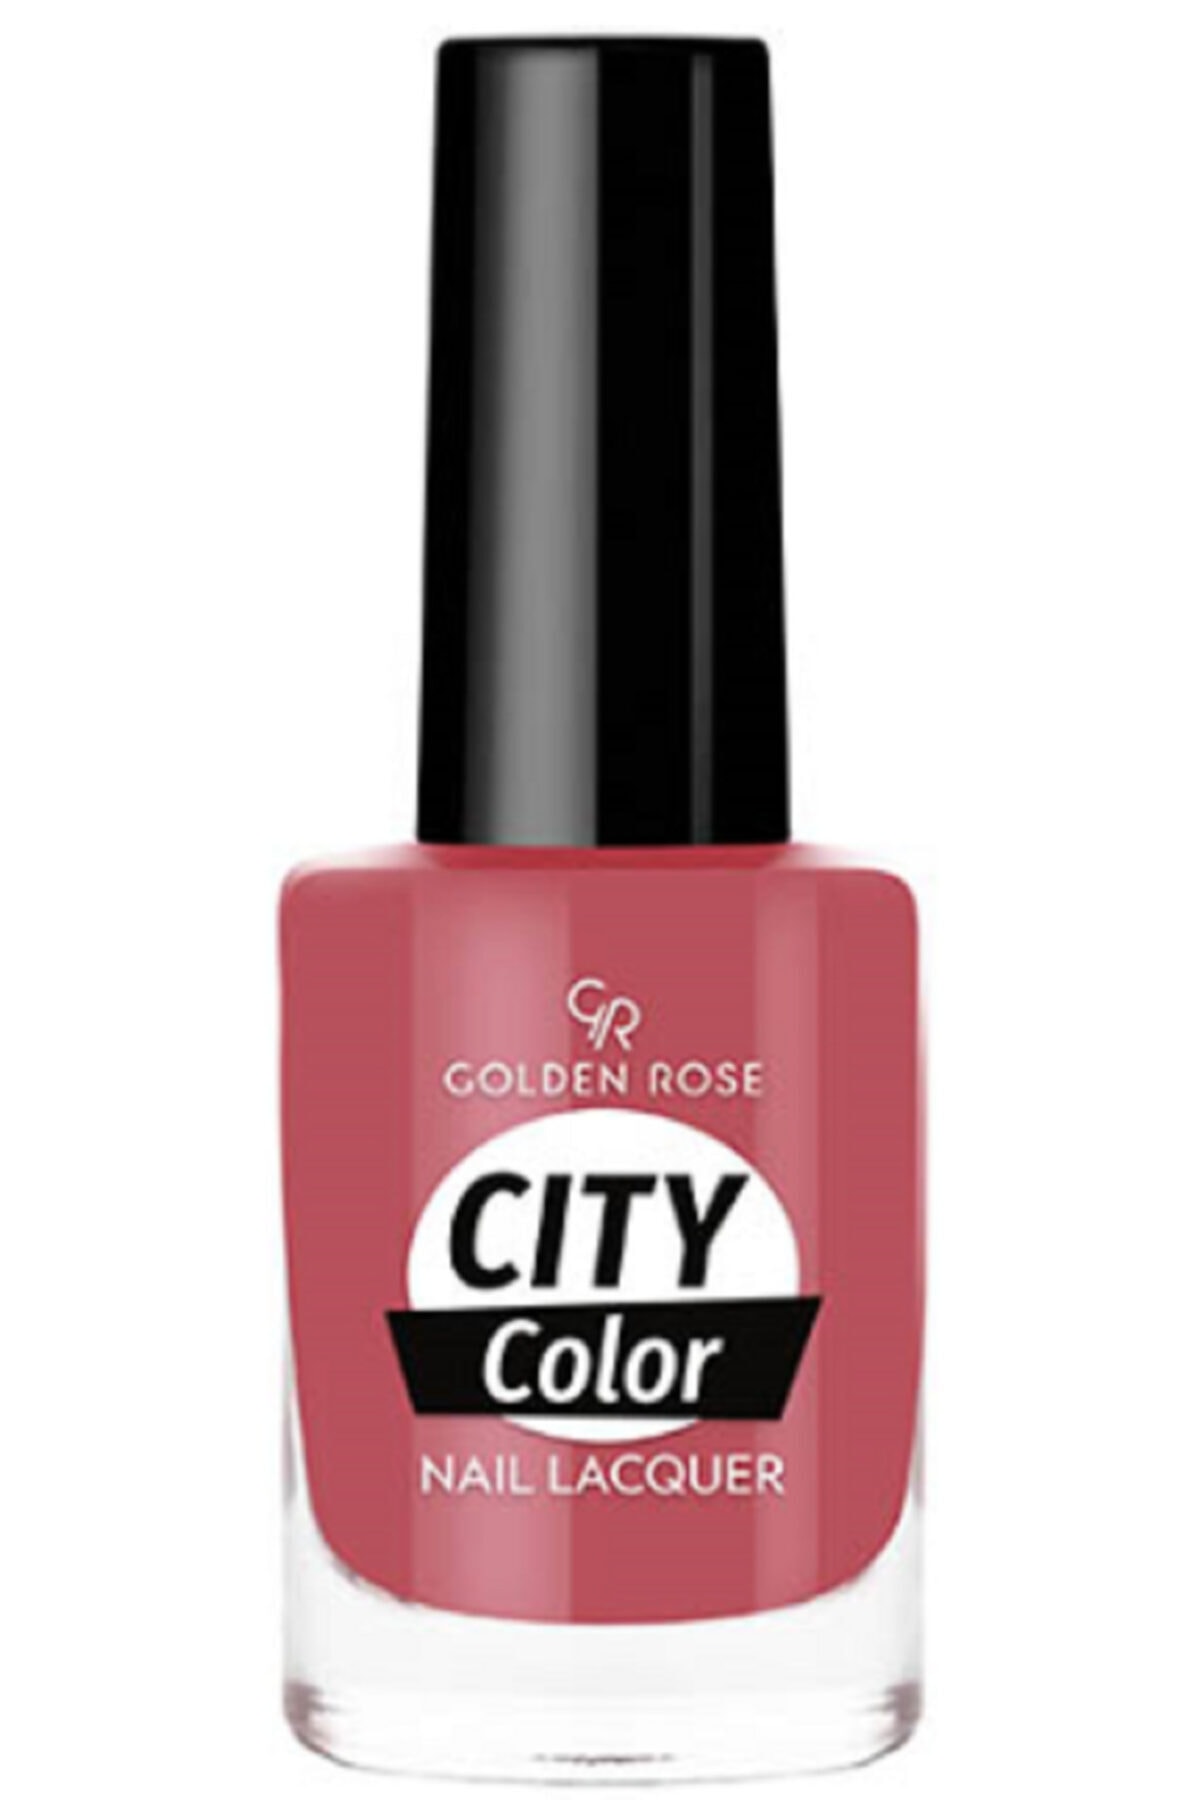 لاک ناخن سیتی کالر City color رنگ کرم براق شماره 15 گلدن رز Golden Rose